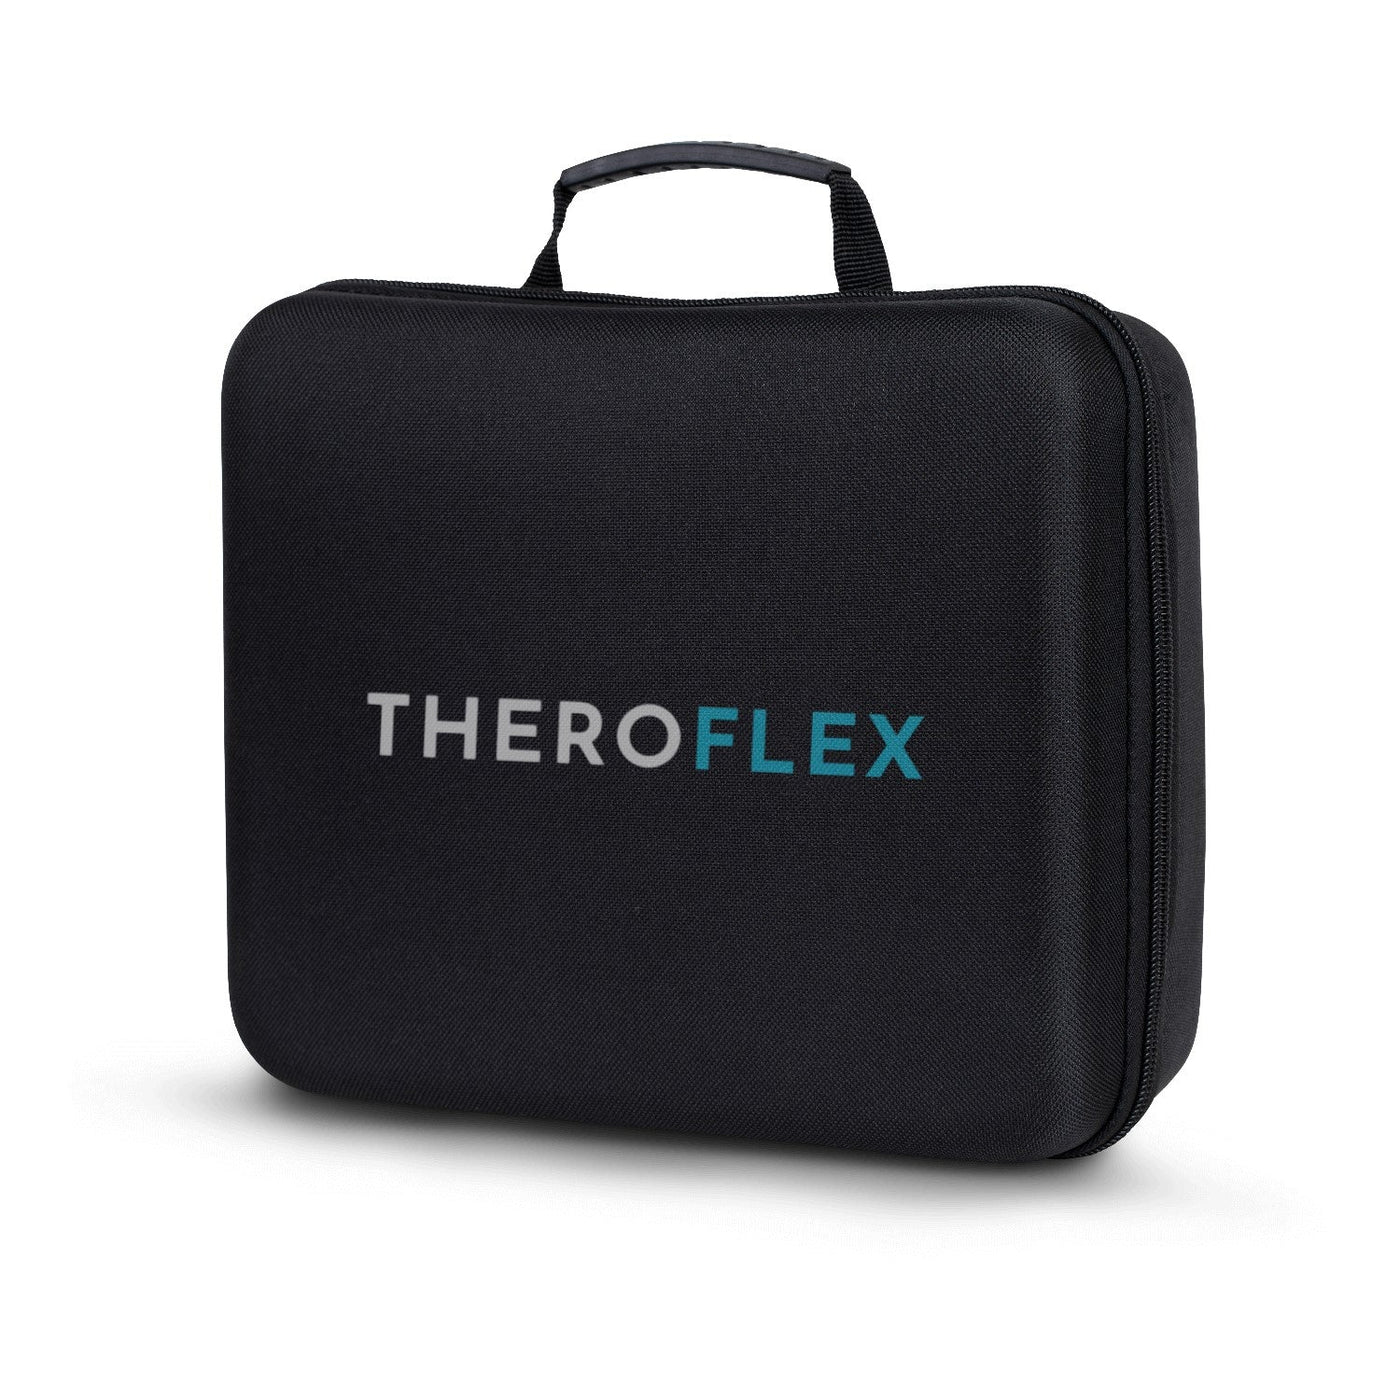 Theroflex© Premium Massage Pro Gun: No More Pain + 1 Year Warranty DP2